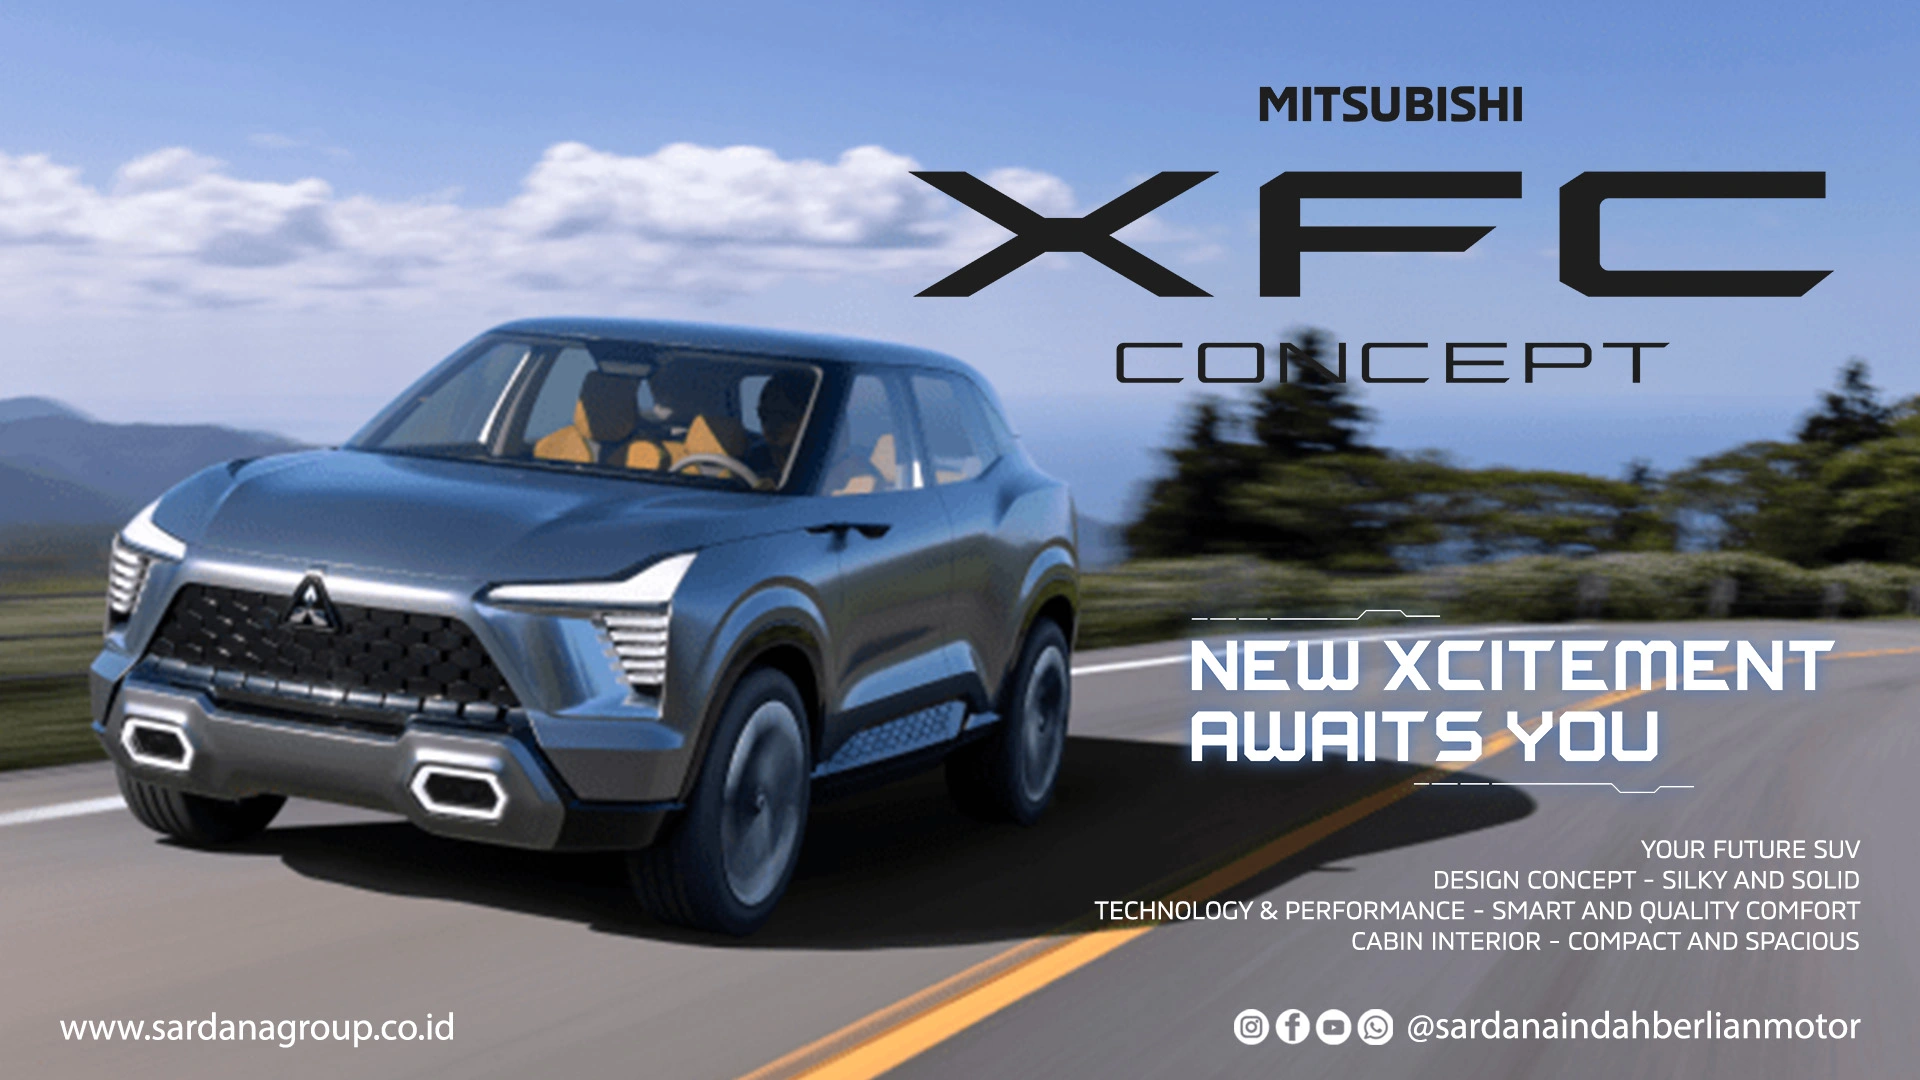 Mitsubishi XFC Concept, Your Future SUV